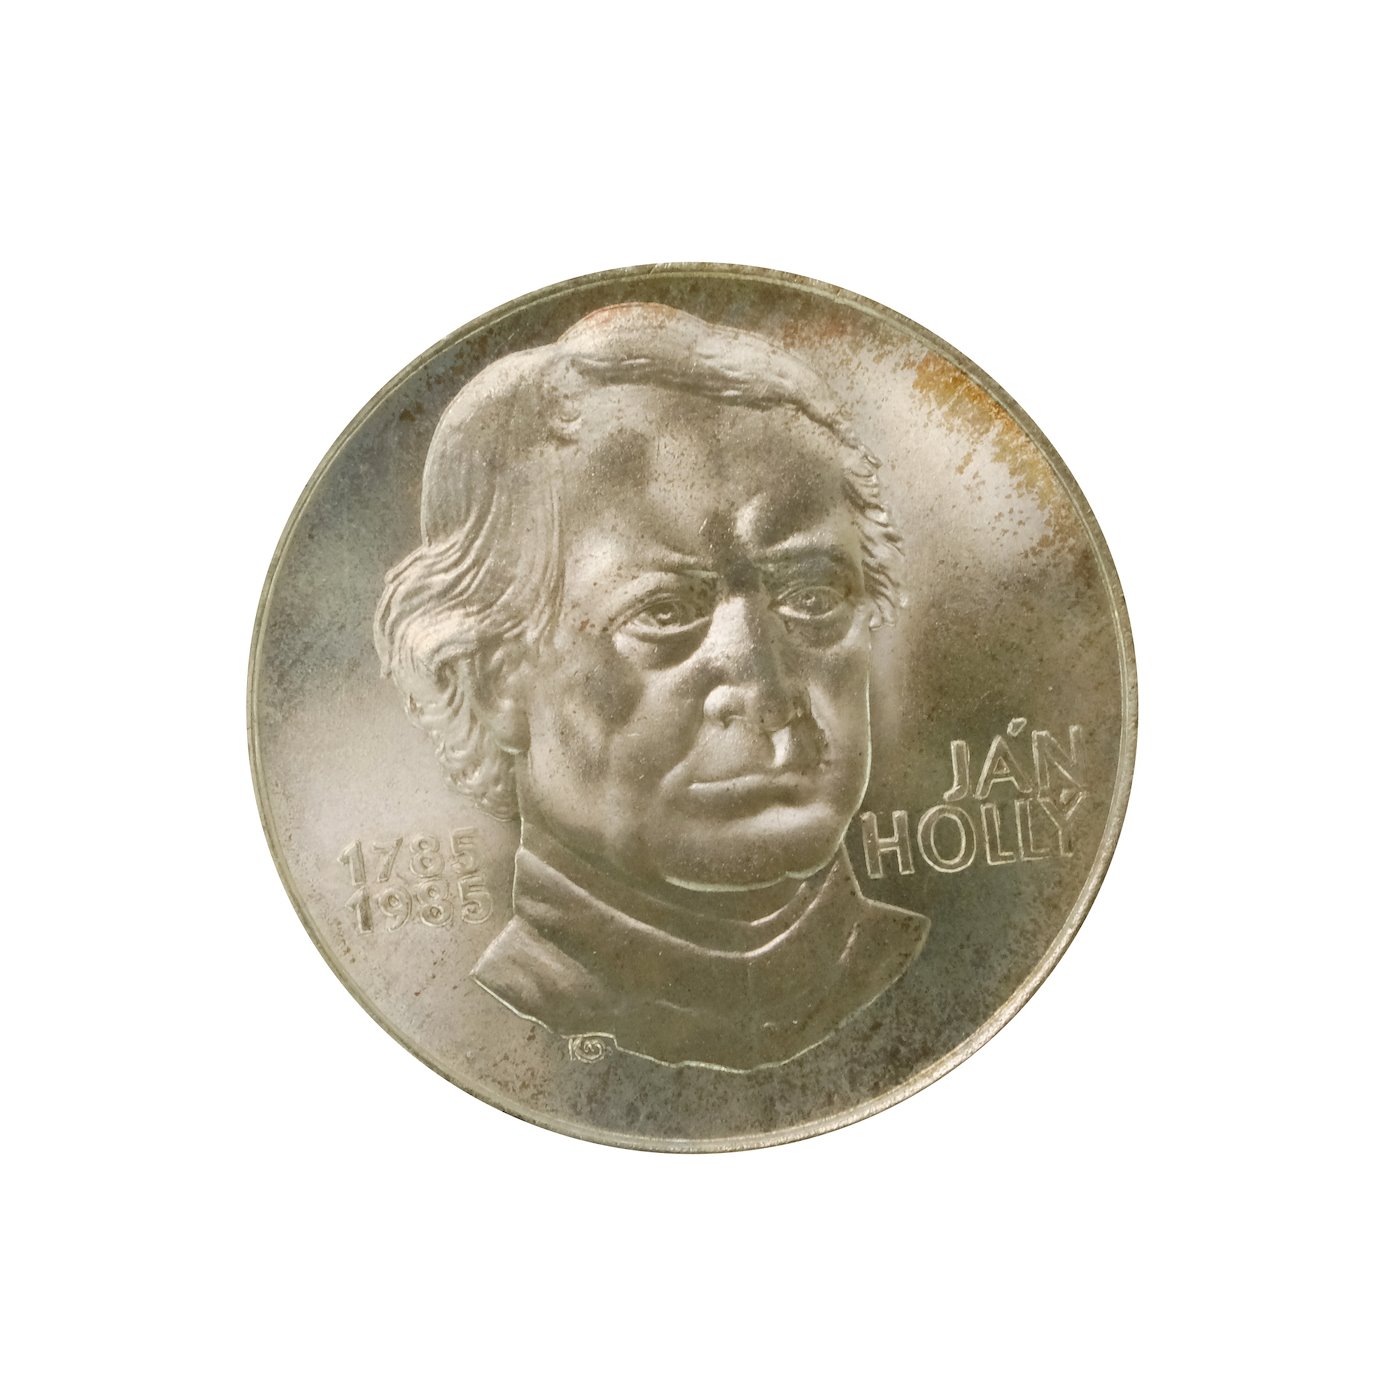 .. - Pamětní stříbrná mince vydaná ke 200 výročí narození Jána Hollého 1984 100 Kčs, stříbro 500/1000, hrubá hmotnost 9 g